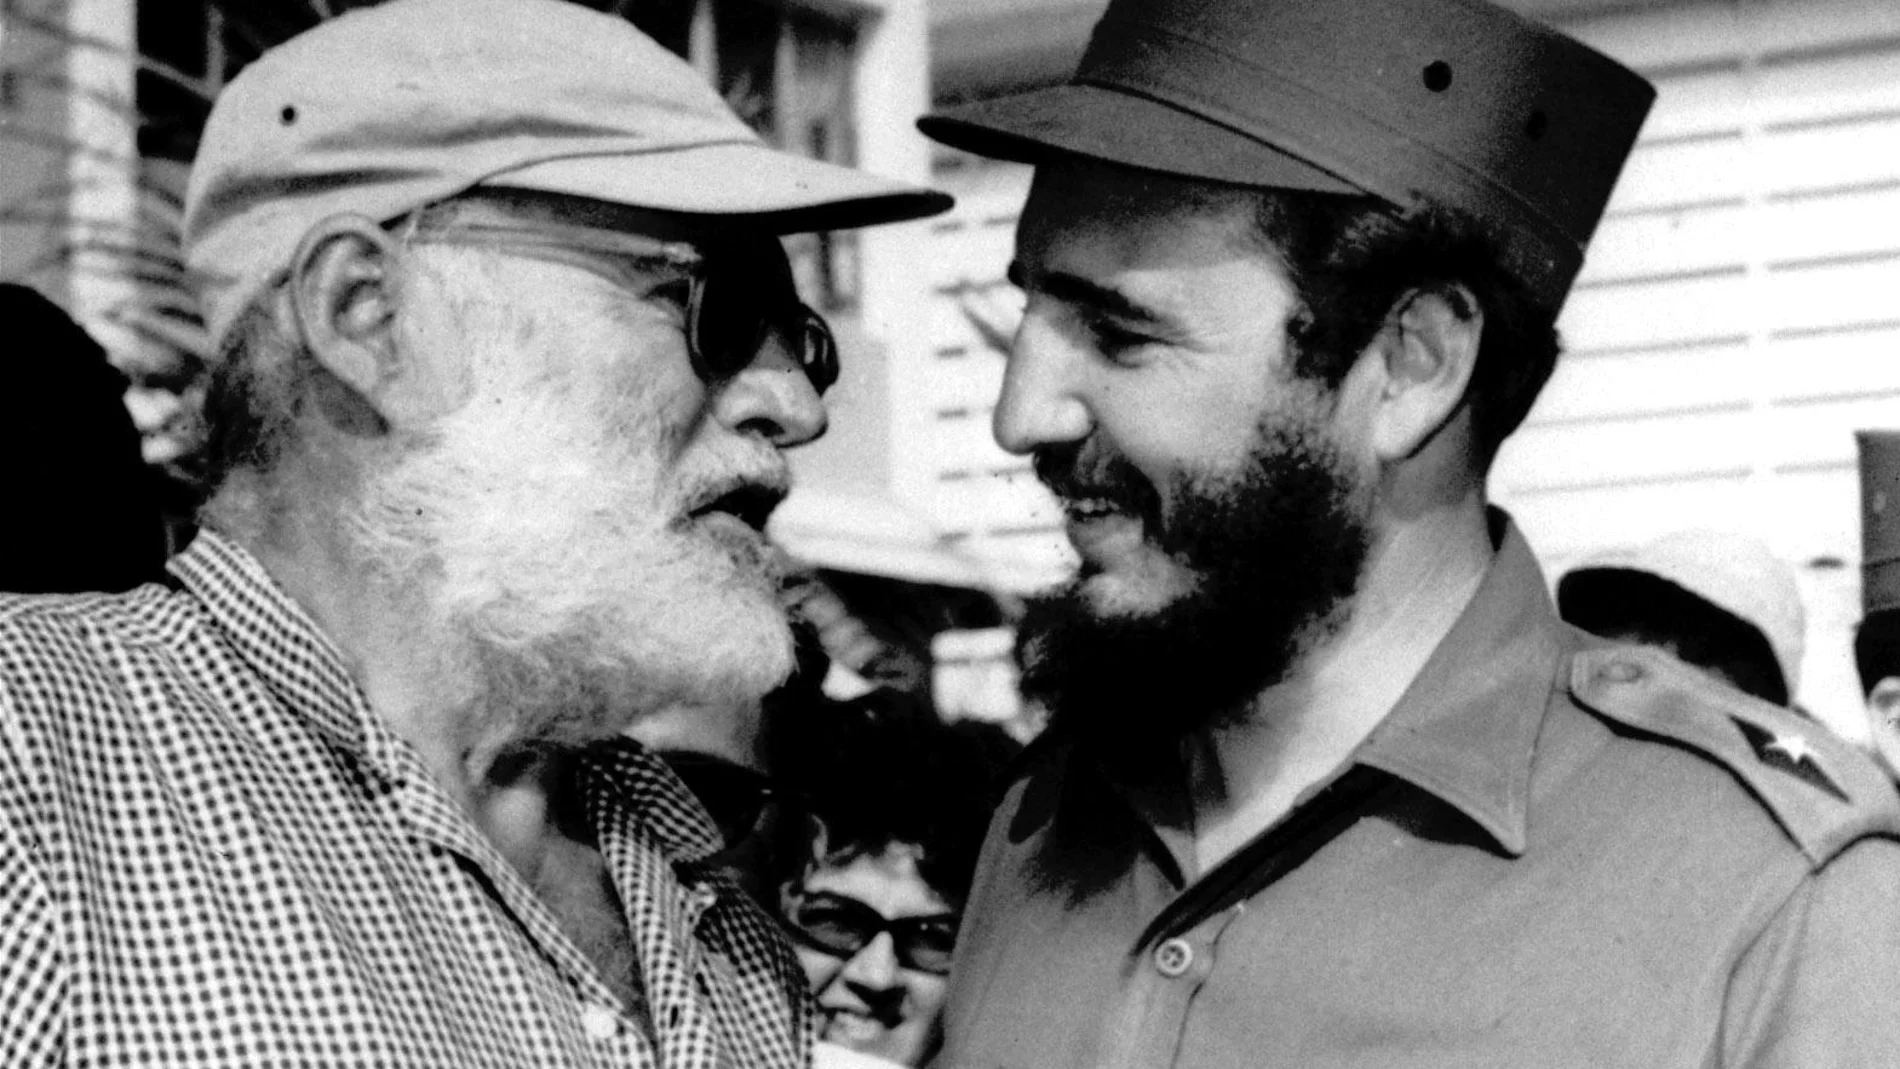 Hemingway vivió en Cuba durante 22 años. En su estancia en el país llegó a escribir obras tan memorables como "El viejo y el mar"